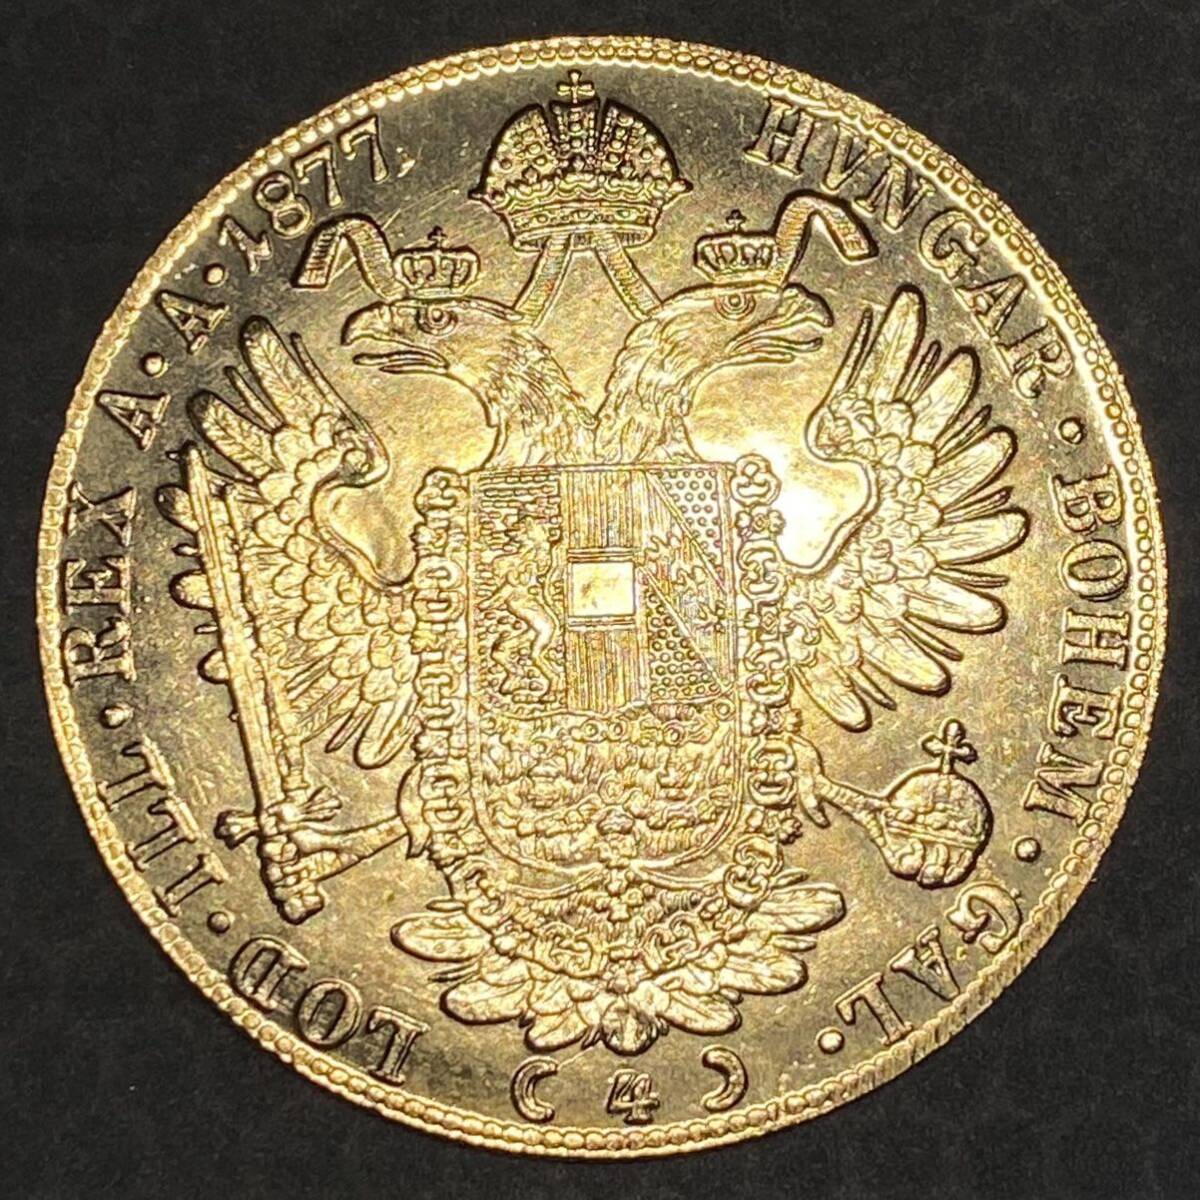 金貨 オーストリア帝国 硬貨 古銭 約14.71g フランツ・ヨーゼフ 1 世 1877年 クラウン 国章 紋章 双頭の鷲 4ダカット コイン 海外硬貨 の画像2